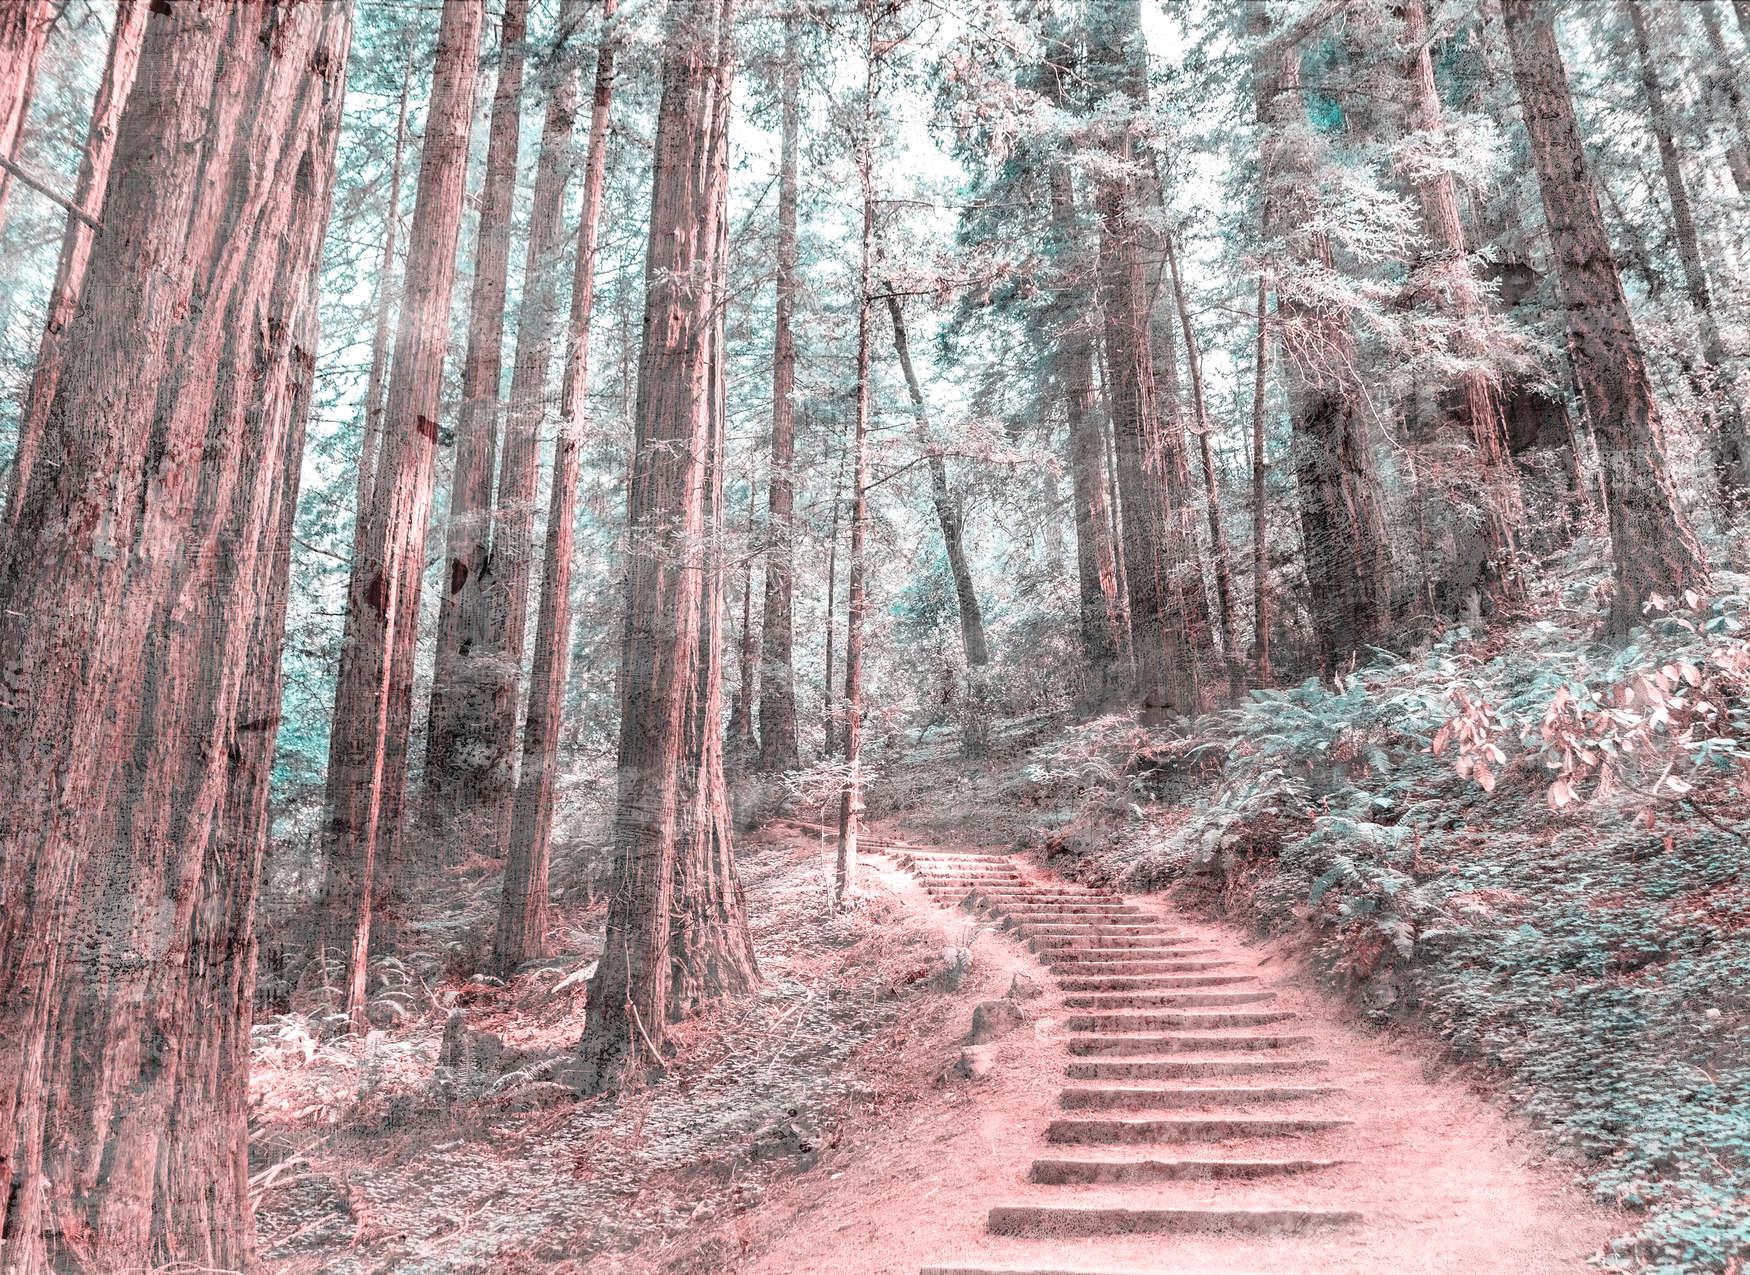             Escaleras de madera por el bosque - Marrón, verde, blanco
        